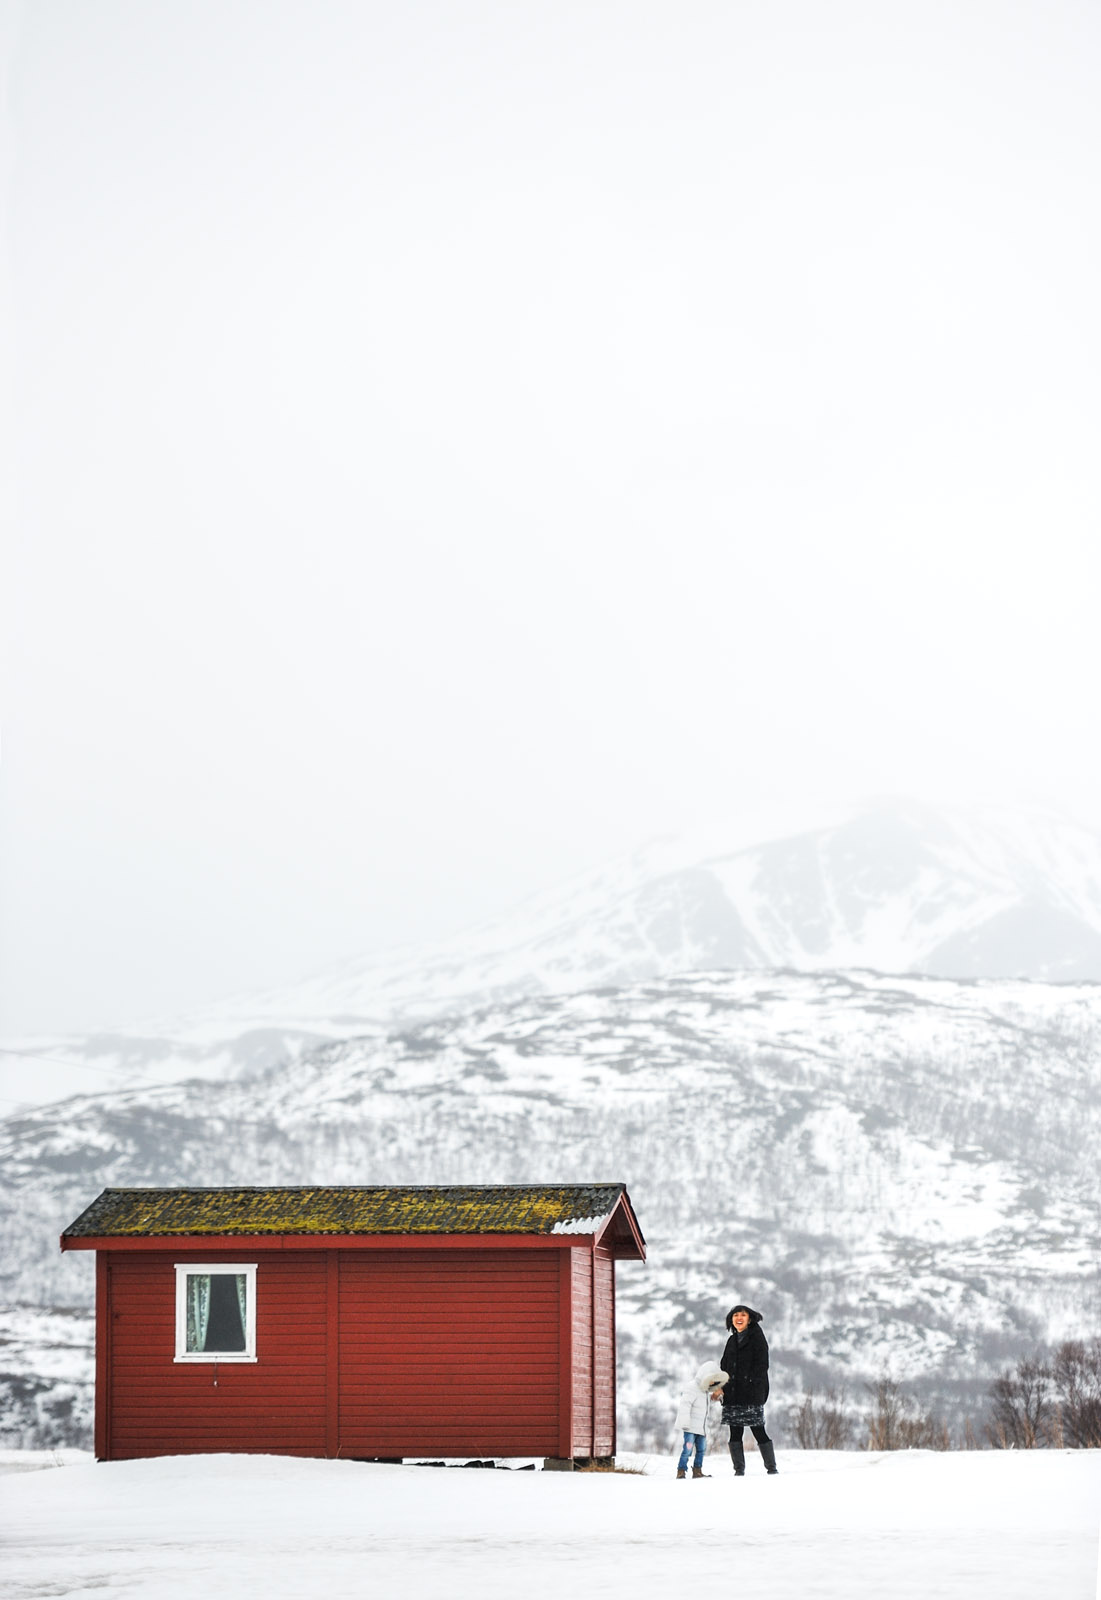 Lofoten Islands, Norway, Apr 2013